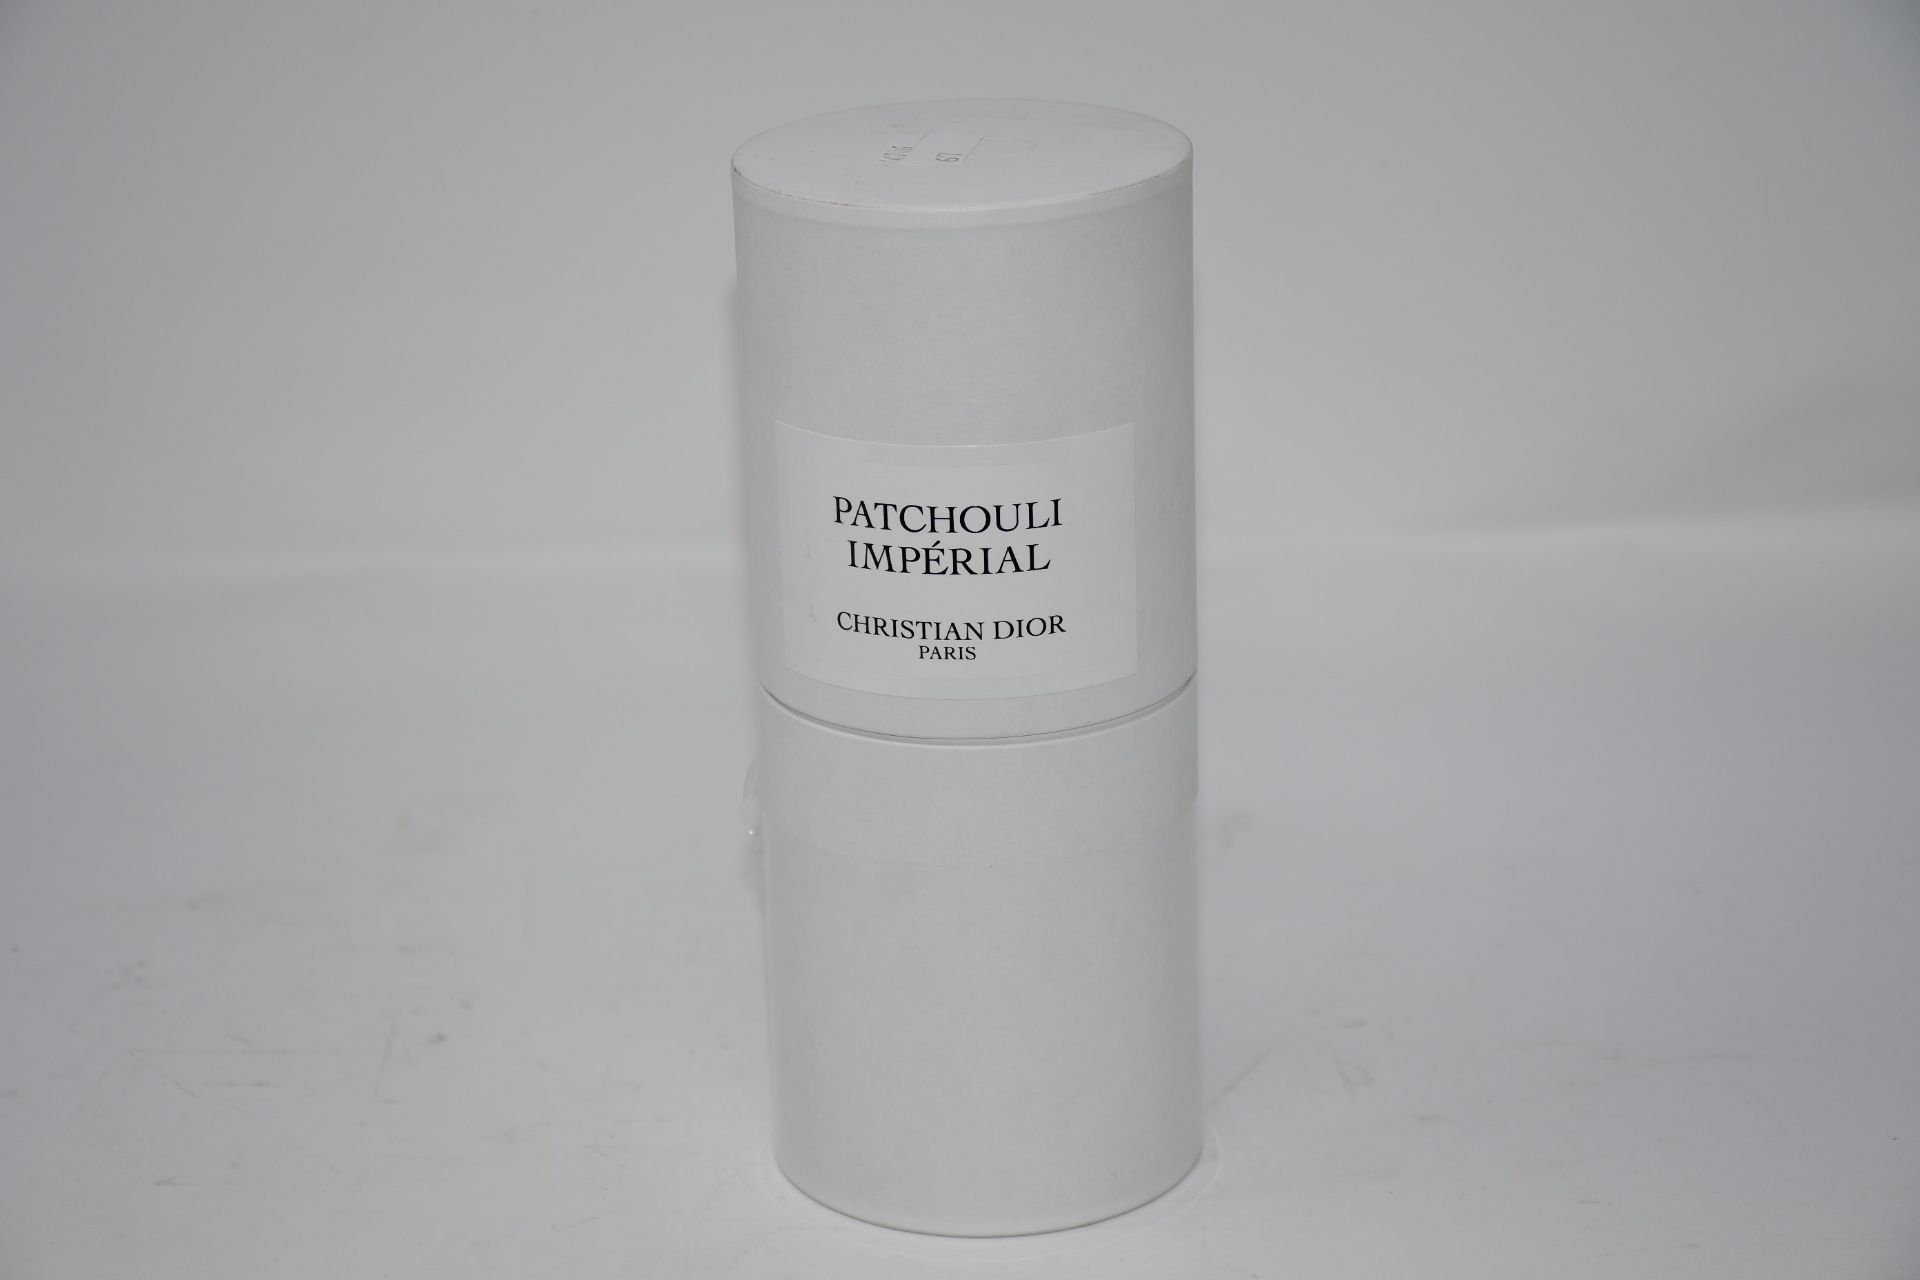 One as new Christian Dior Patchouli Imperial eau de parfum (250ml, box unsealed).